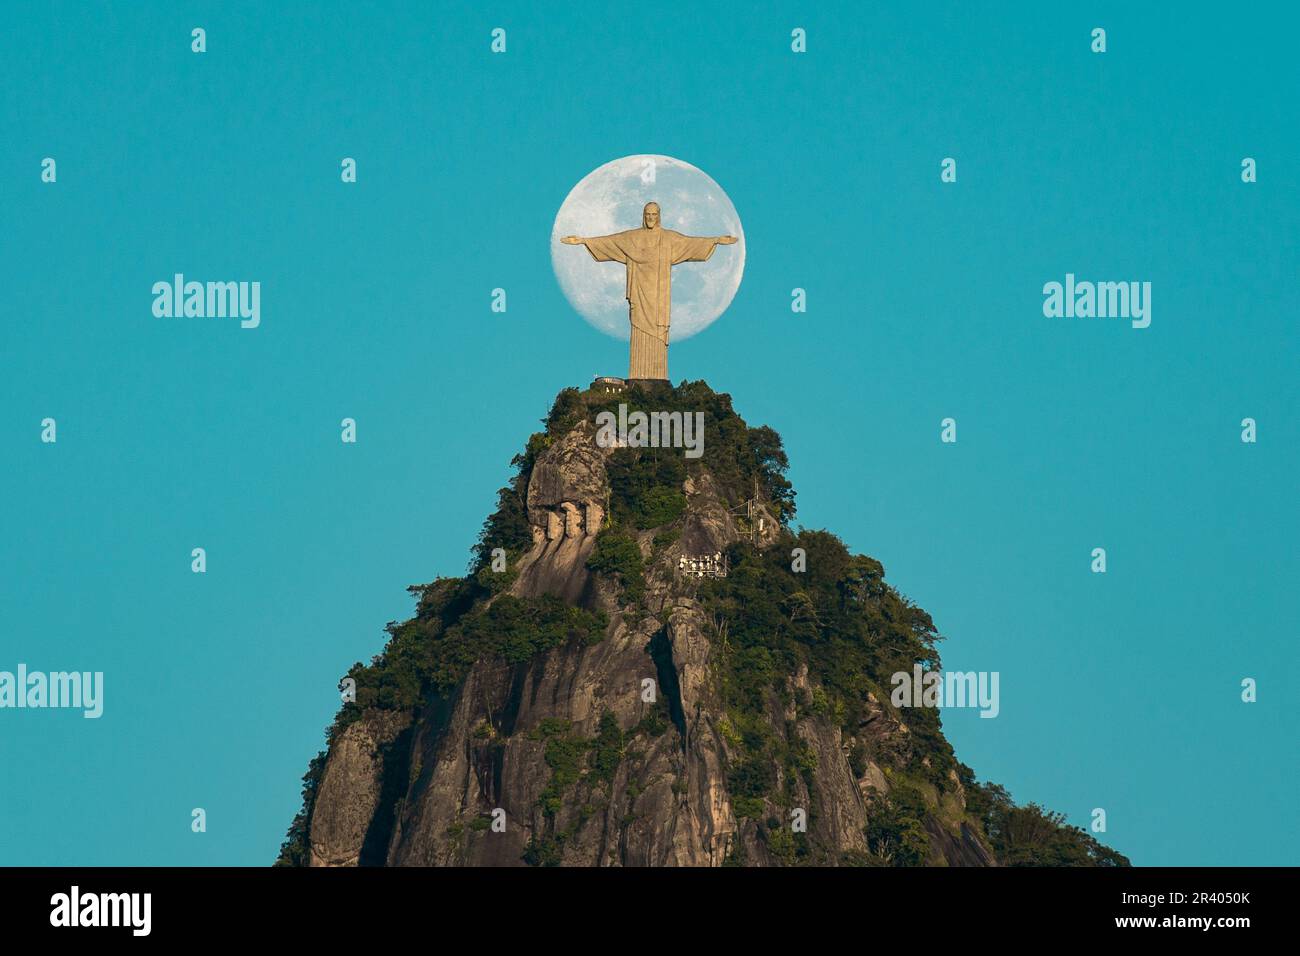 Einzigartiger Moment mit dem Mond und Christus dem Erlöser, Rio de Janeiro, Brasilien - Fotografie von Donatas Dabravolskas Stockfoto